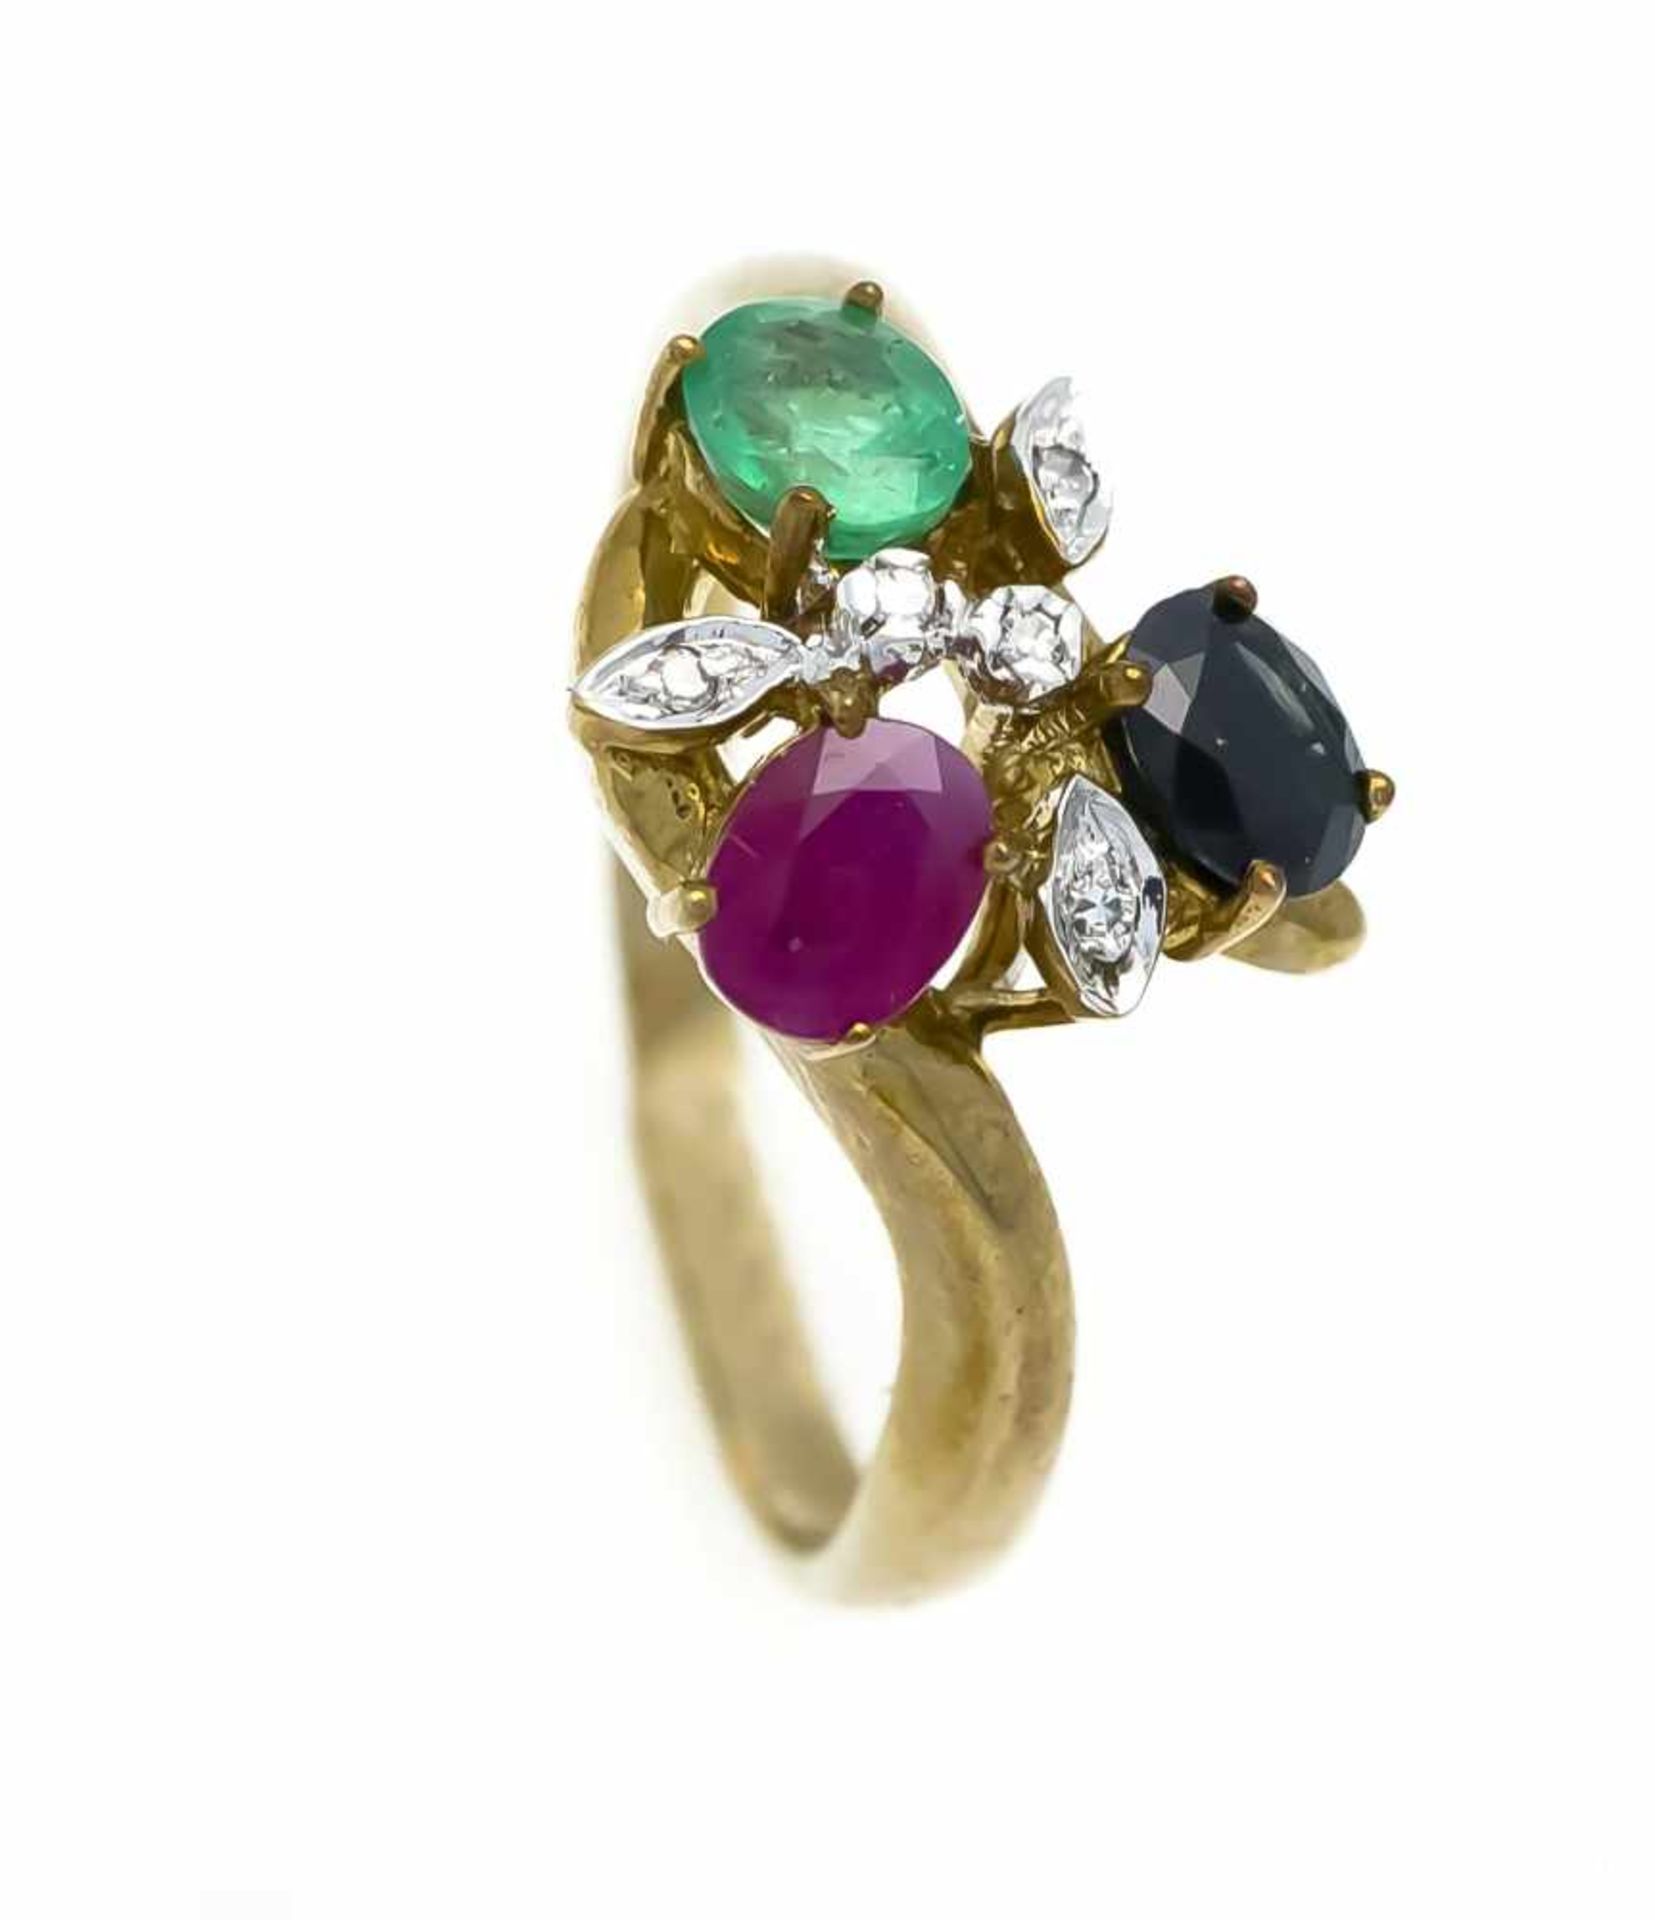 Multicolor-Diamant-Ring GG/WG 333/000 mit je einem oval fac. Rubin, Smaragd und Saphir 5 x4 mm und 5